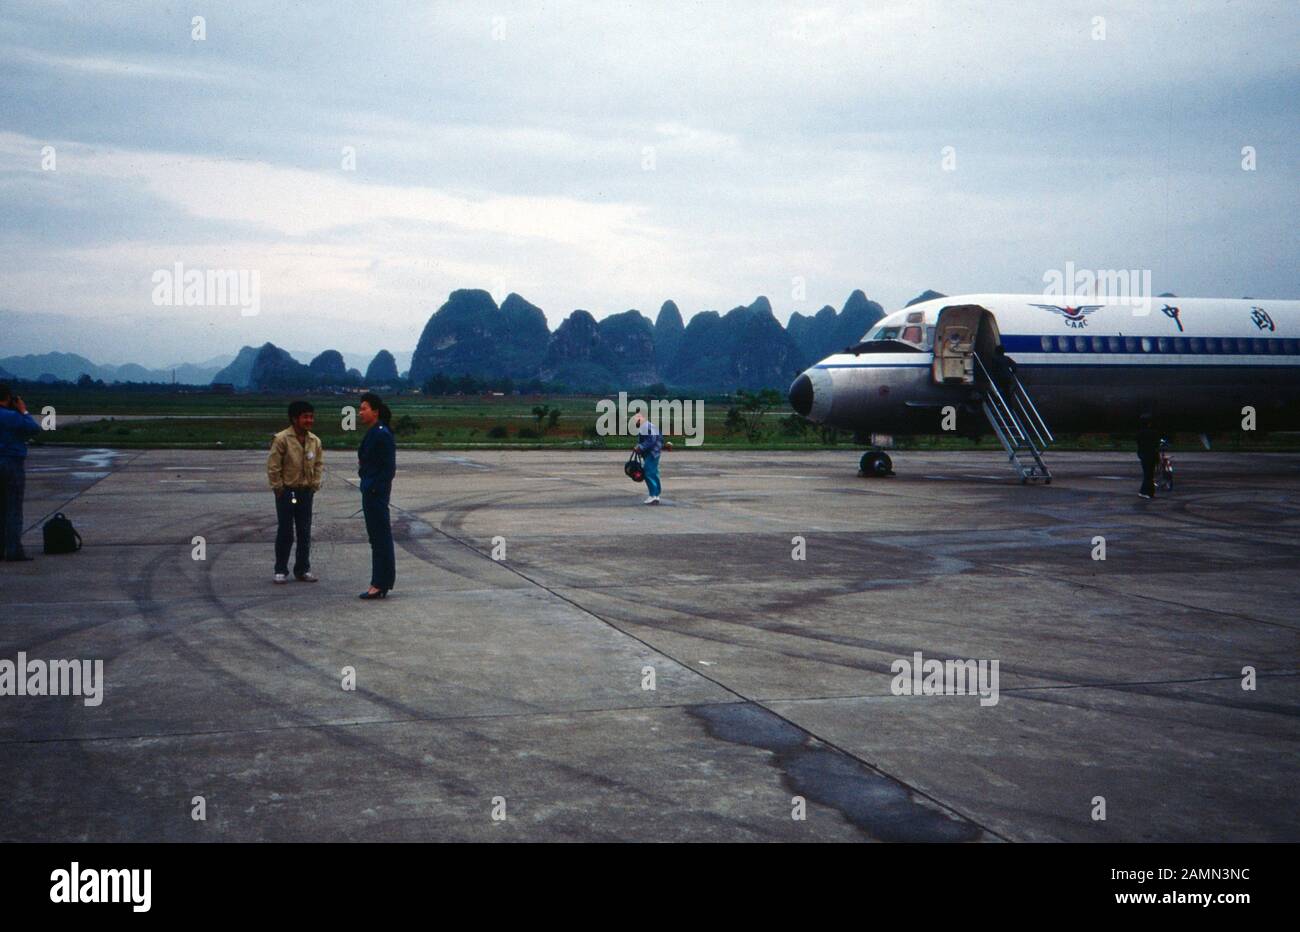 An der Gangway zu einem Inlandsflug auf dem Flughafen, China 1980er Jahre. Passengers entering a plane for a domestic flight at an airport, China 1980s. Stock Photo